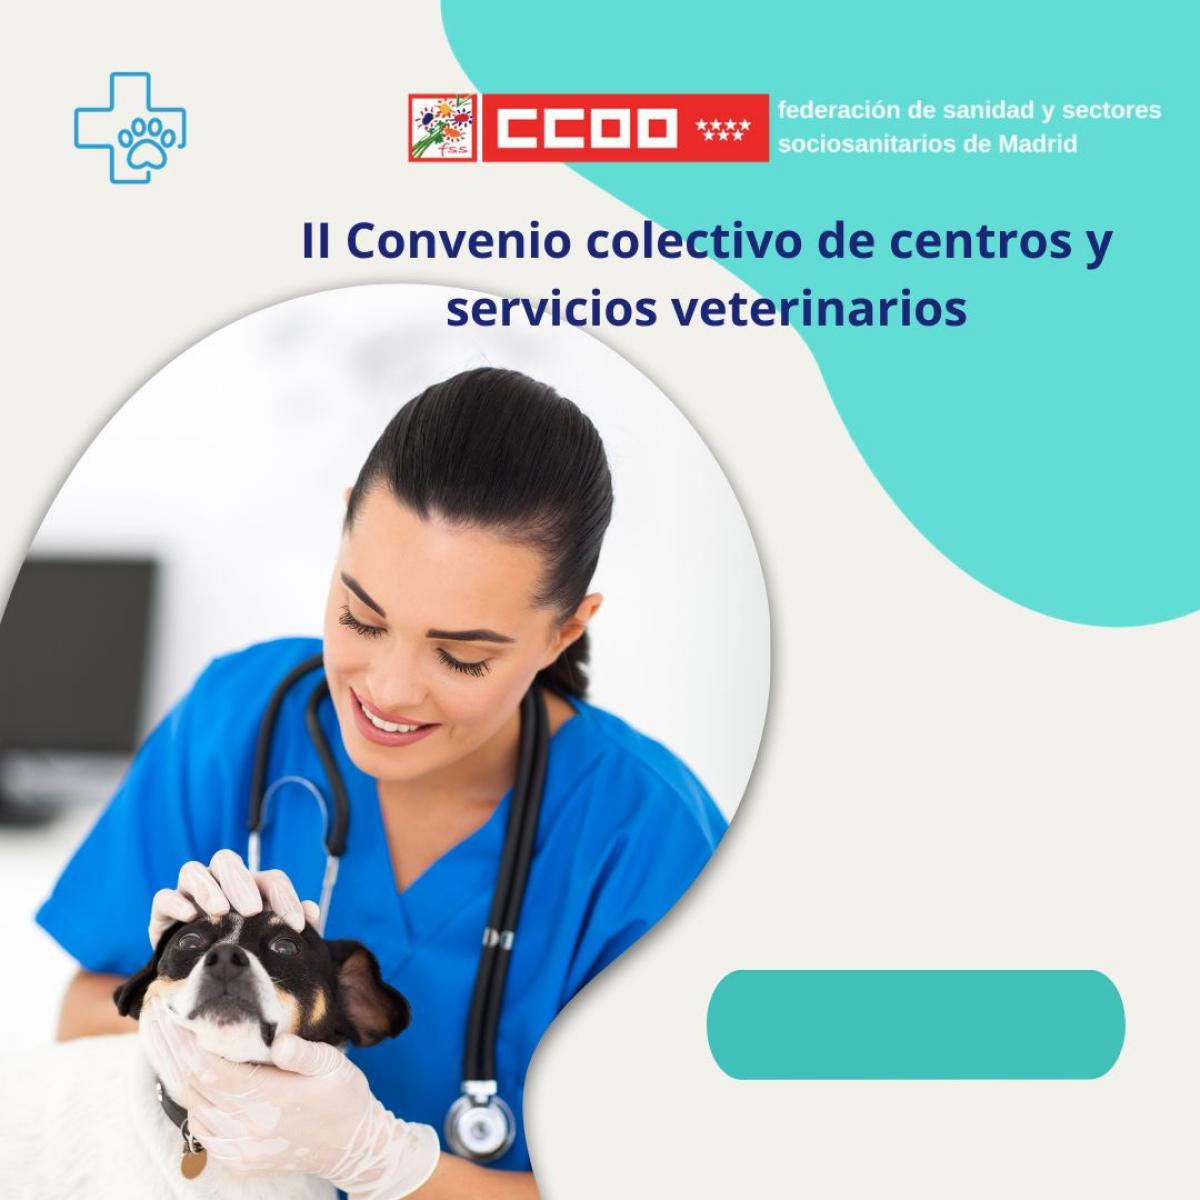 II Convenio Colectivo de centros y servicios veterinarios